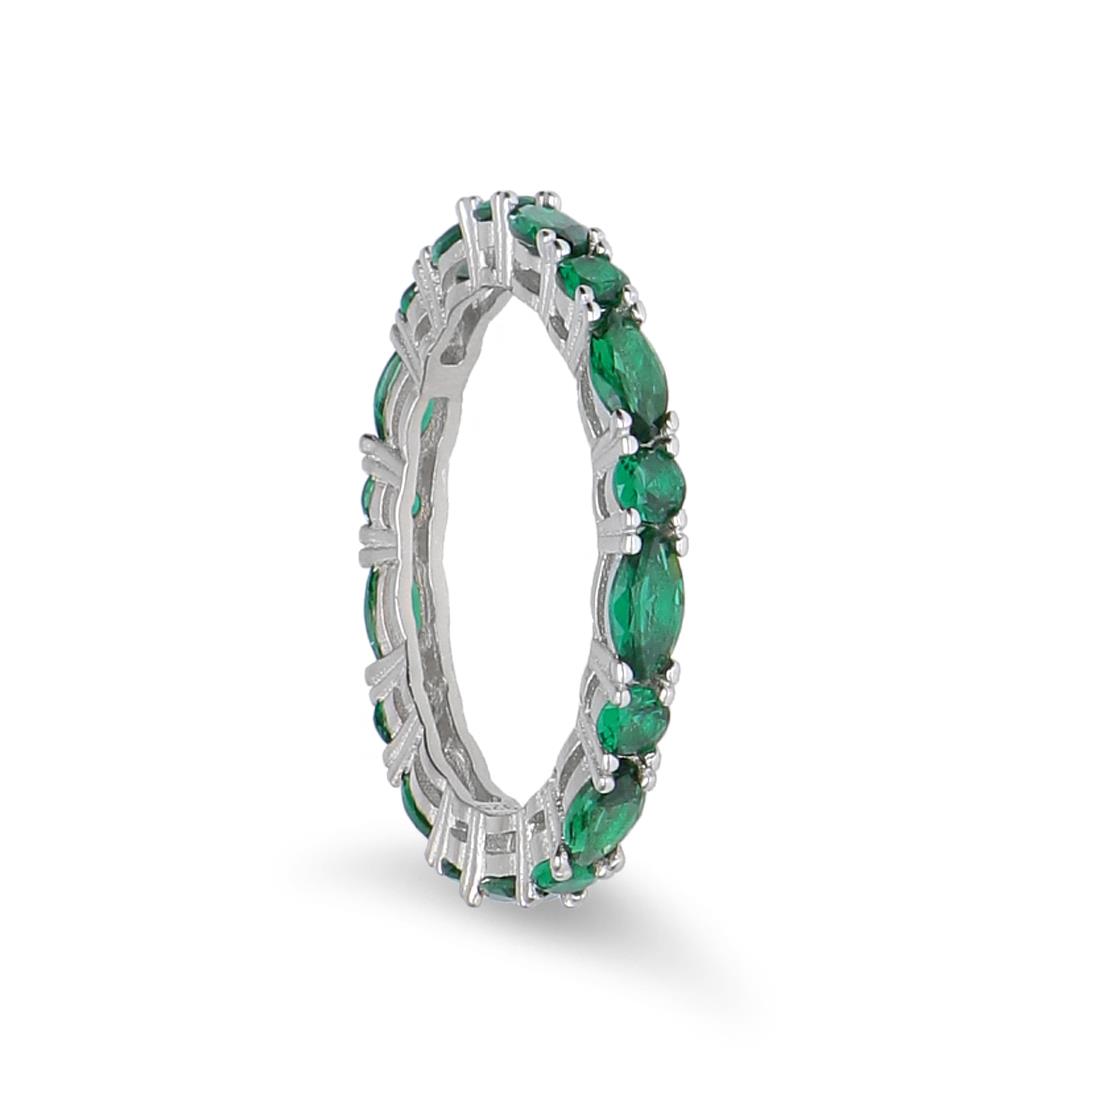 Anello eternity in argento con zirconi verdi - LUXURY MILANO